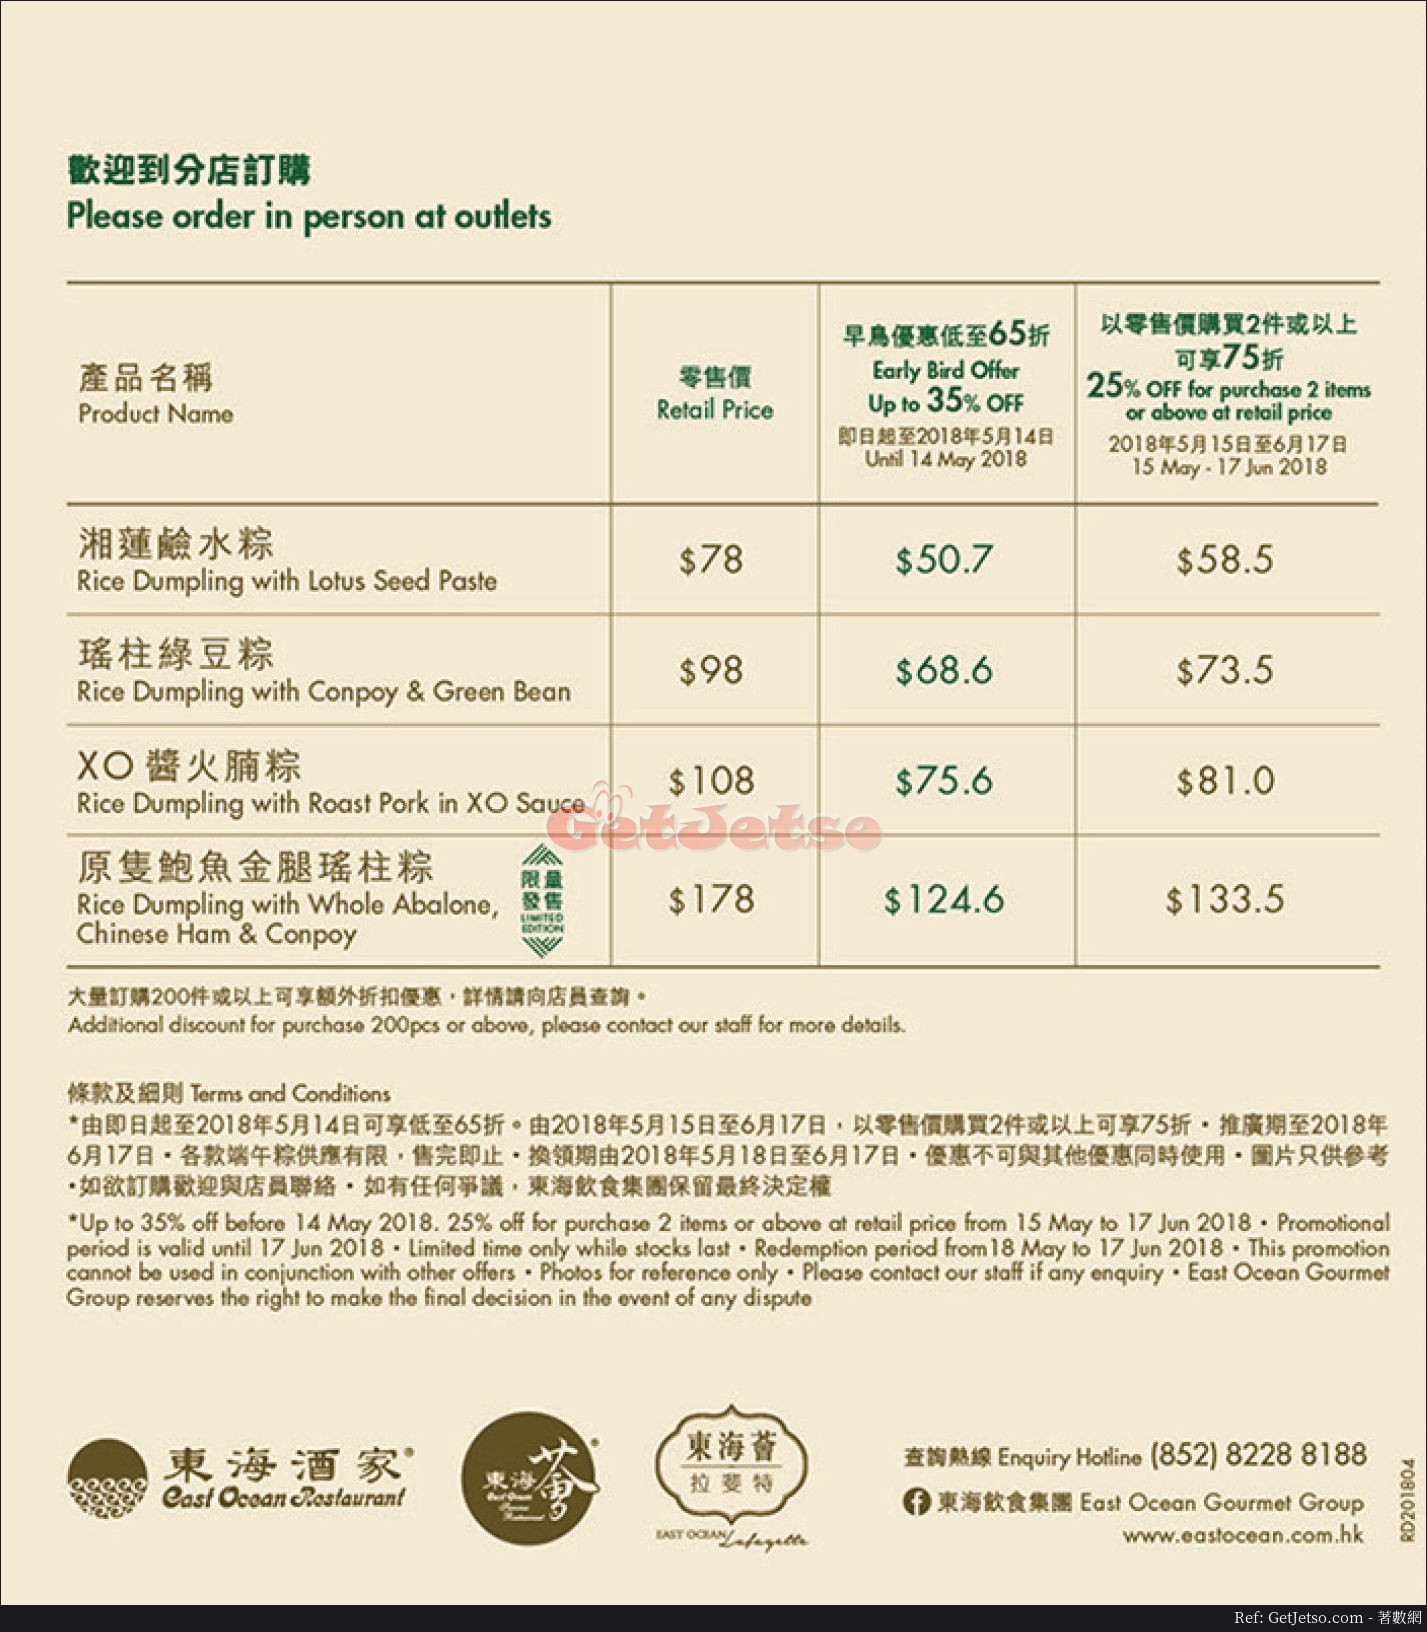 東海飲食集團端午粽低至7折優惠@建行信用卡(至18年6月17日)圖片2